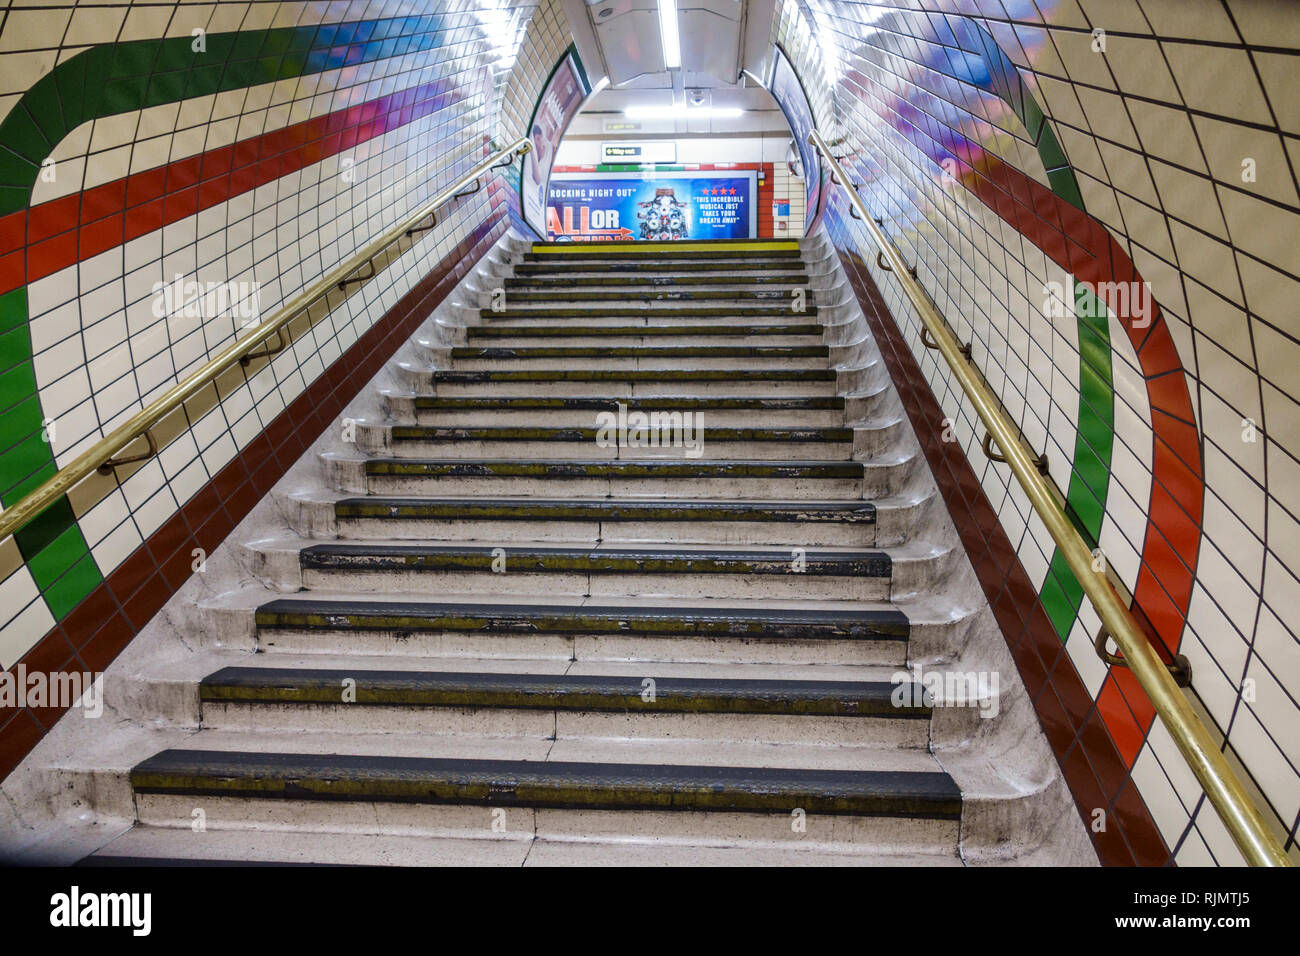 Regno Unito Gran Bretagna Inghilterra Londra Westminster Piccadilly Circus Underground Stazione della metropolitana metropolitana di mezzi pubblici scalini s Foto Stock